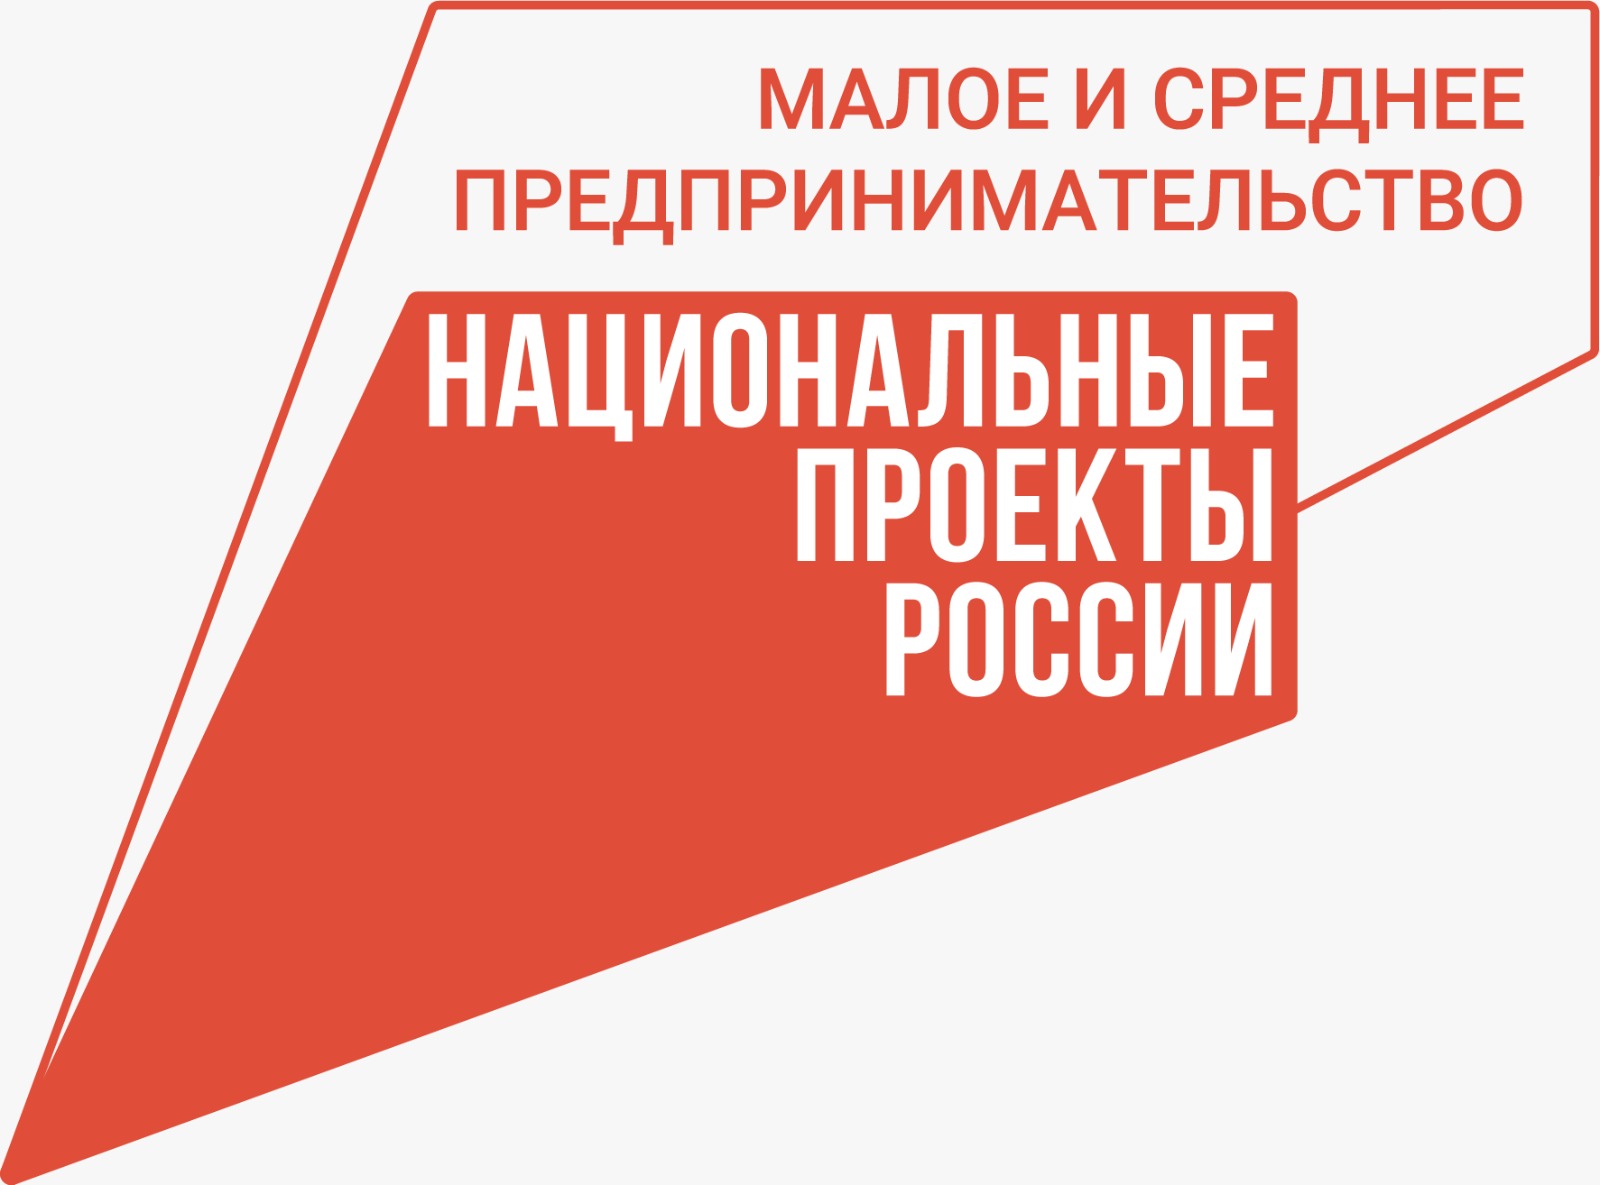 АНО «Национальные приоритеты» и телеканал РБК представляют новый выпуск программы «Портрет региона», посвященный Нижегородской области